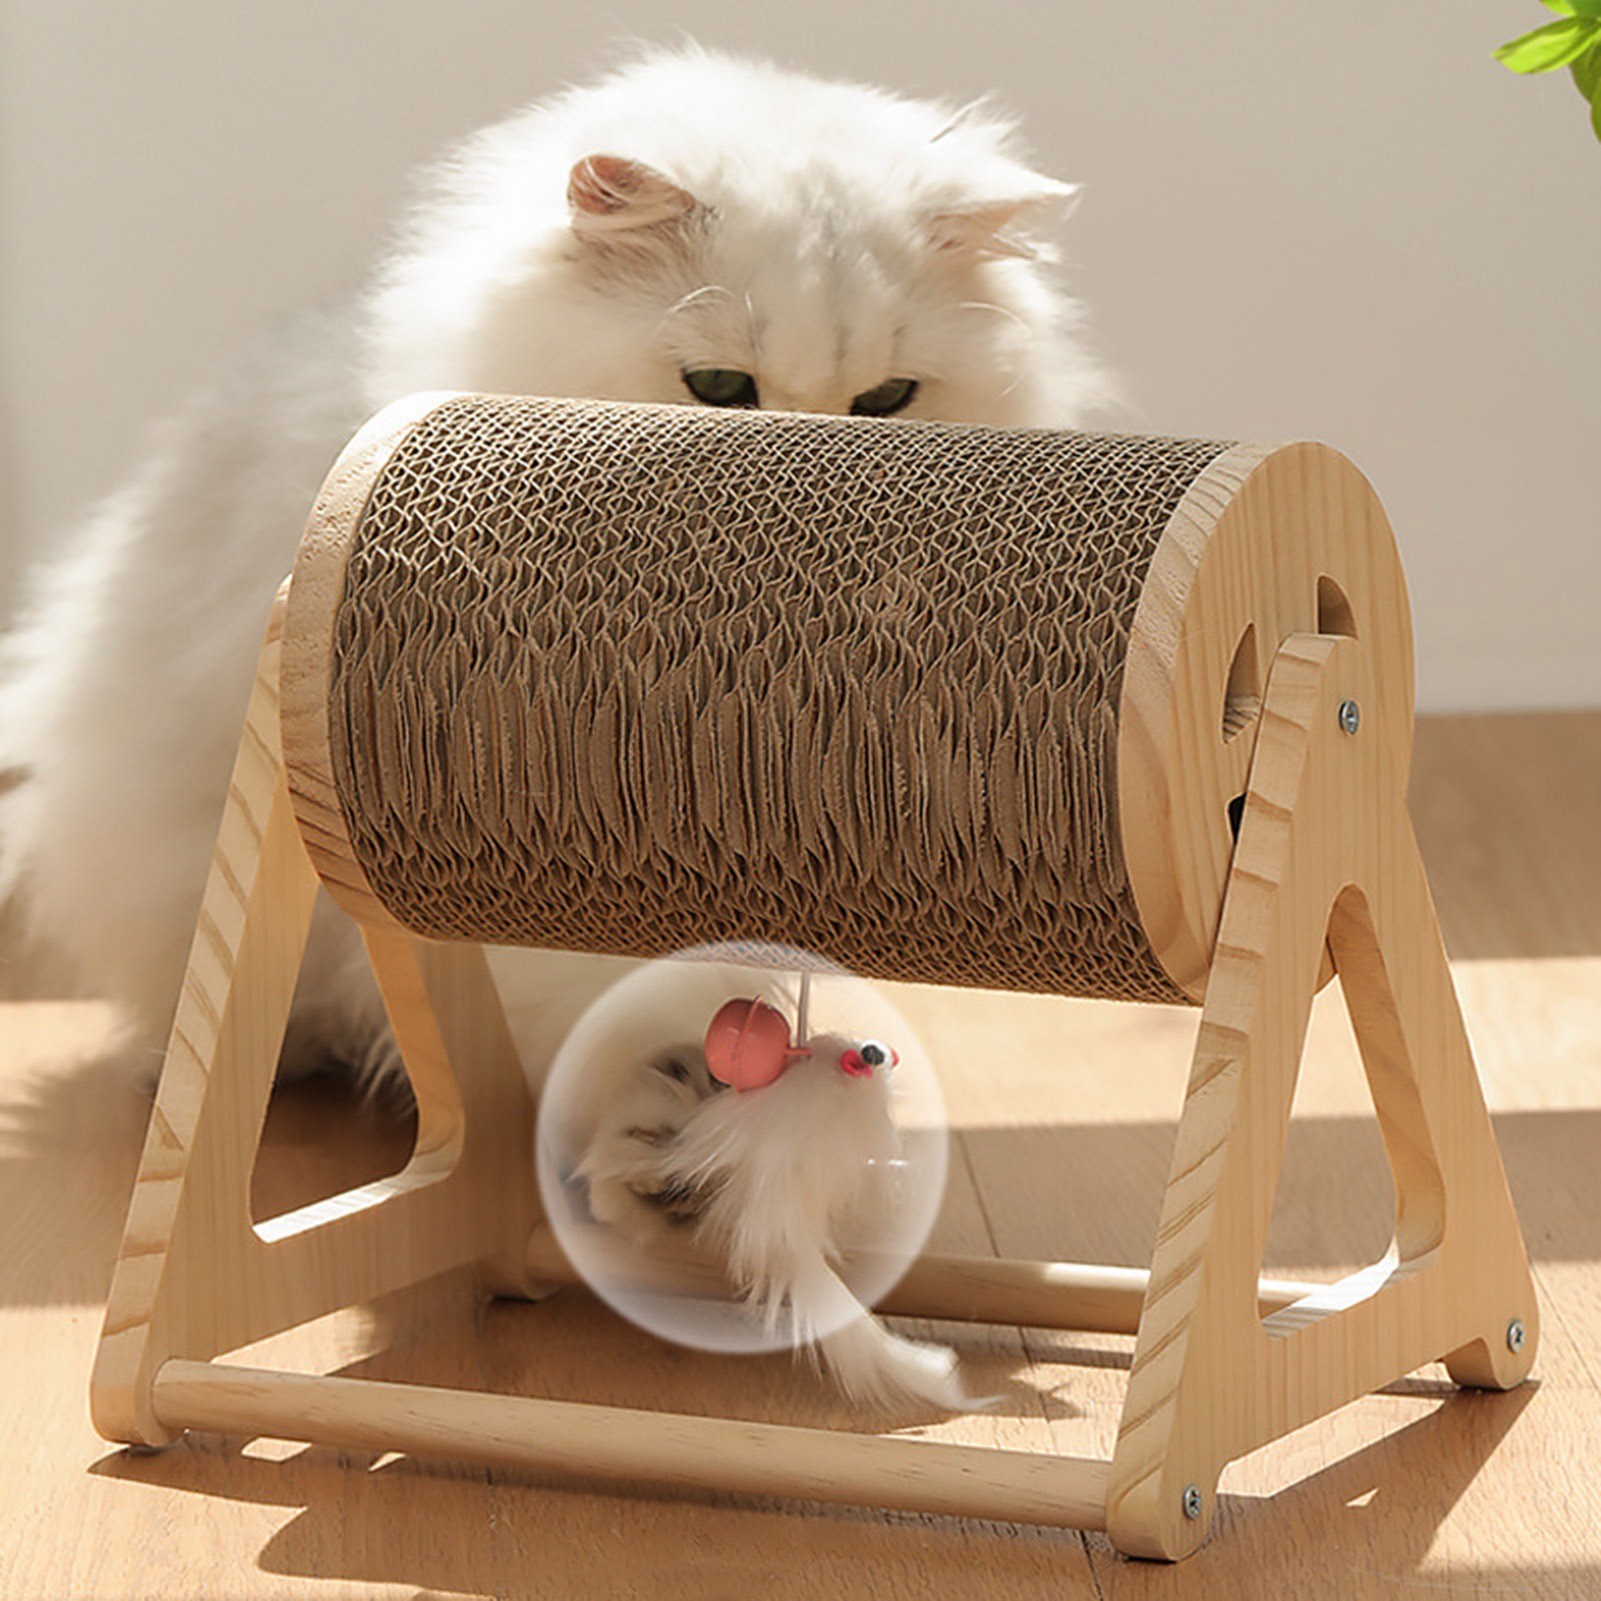 Griffoir-en-carton-pour-chat-Balle-a-griffer-pour-chat-Griffoir-avec-herbe-chat